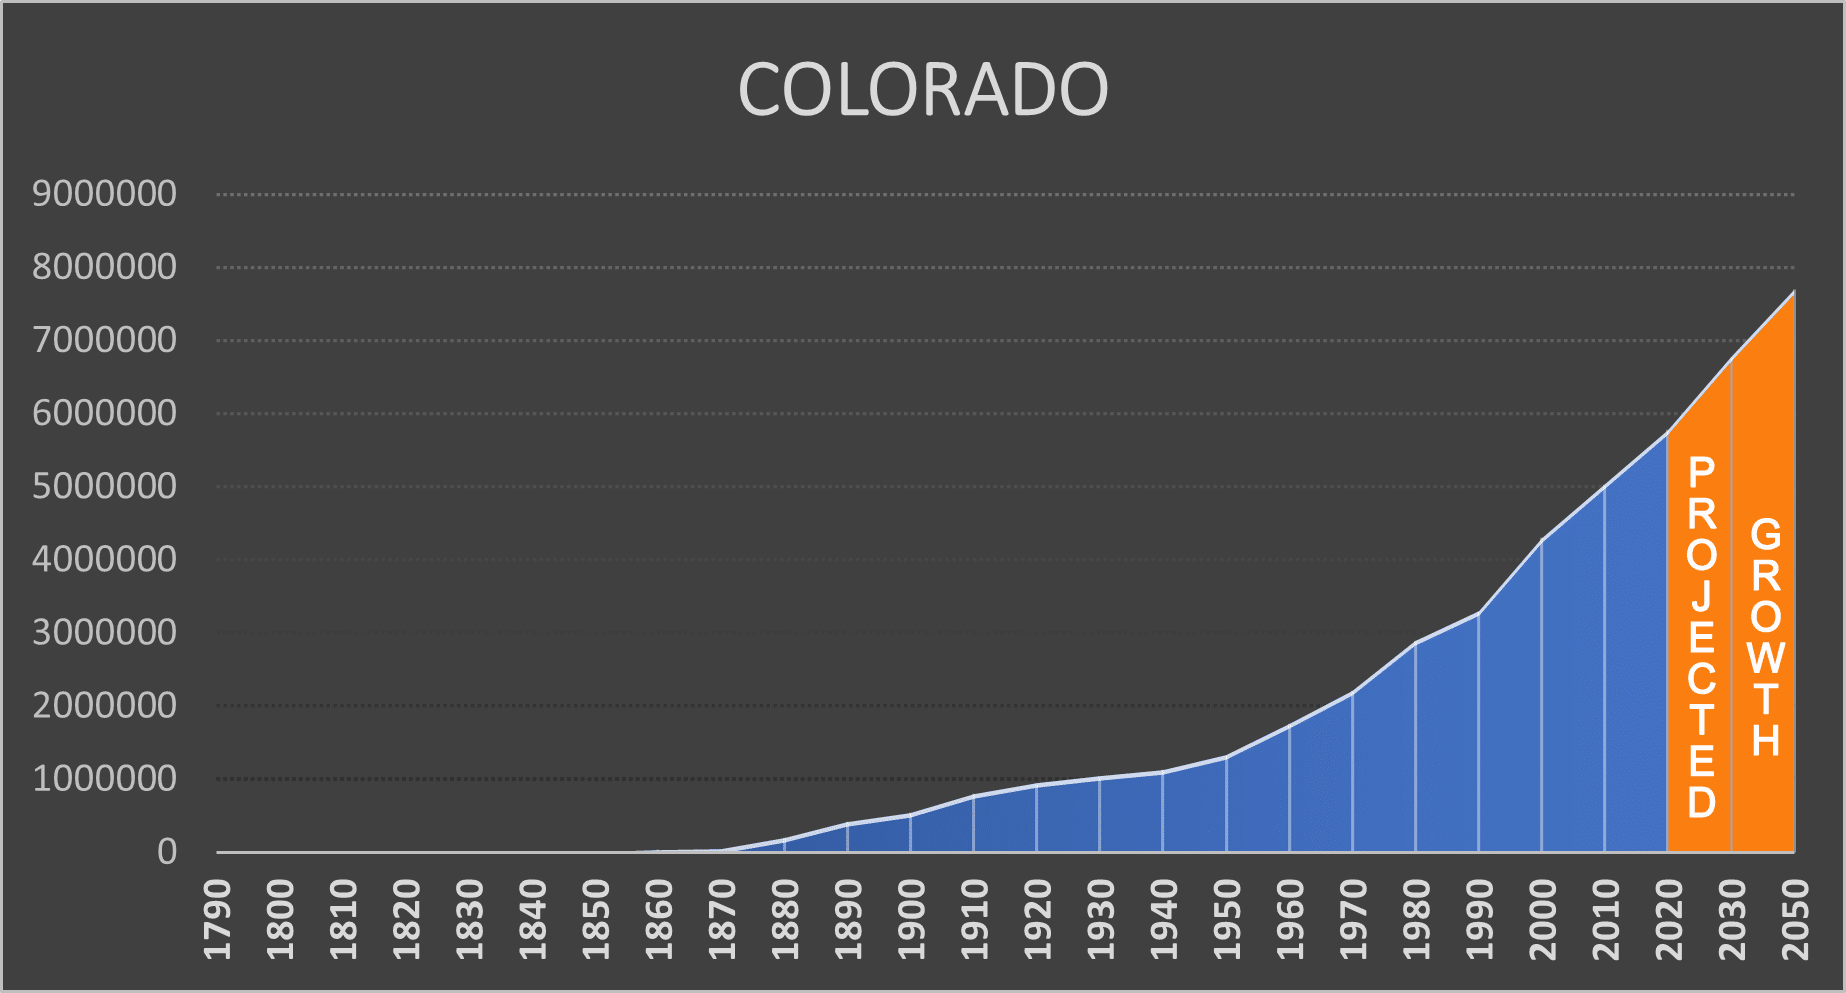 Colorado Negative Population Growth